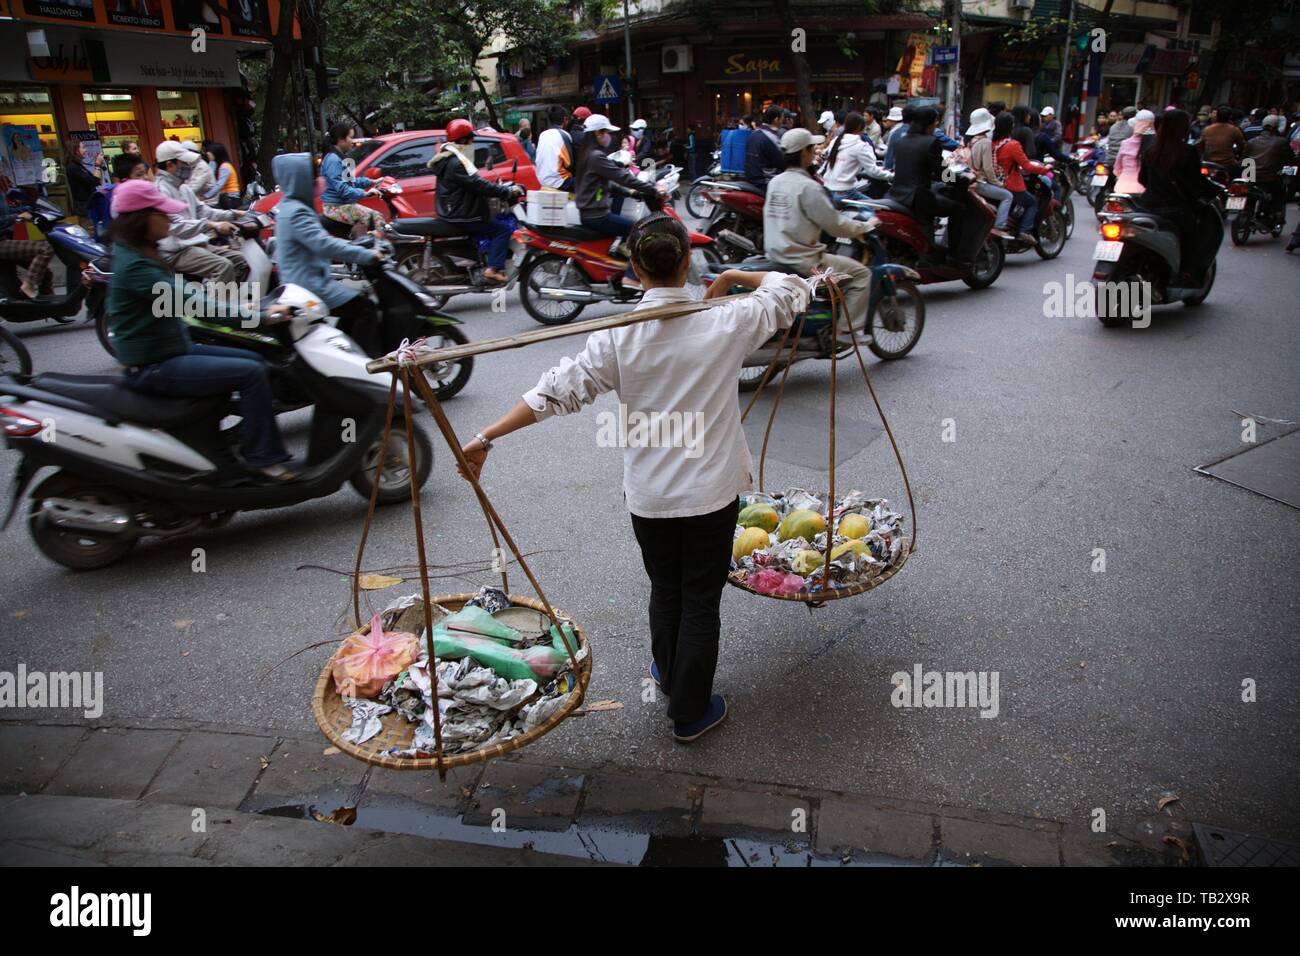 Fruit seller in Hanoi Stock Photo